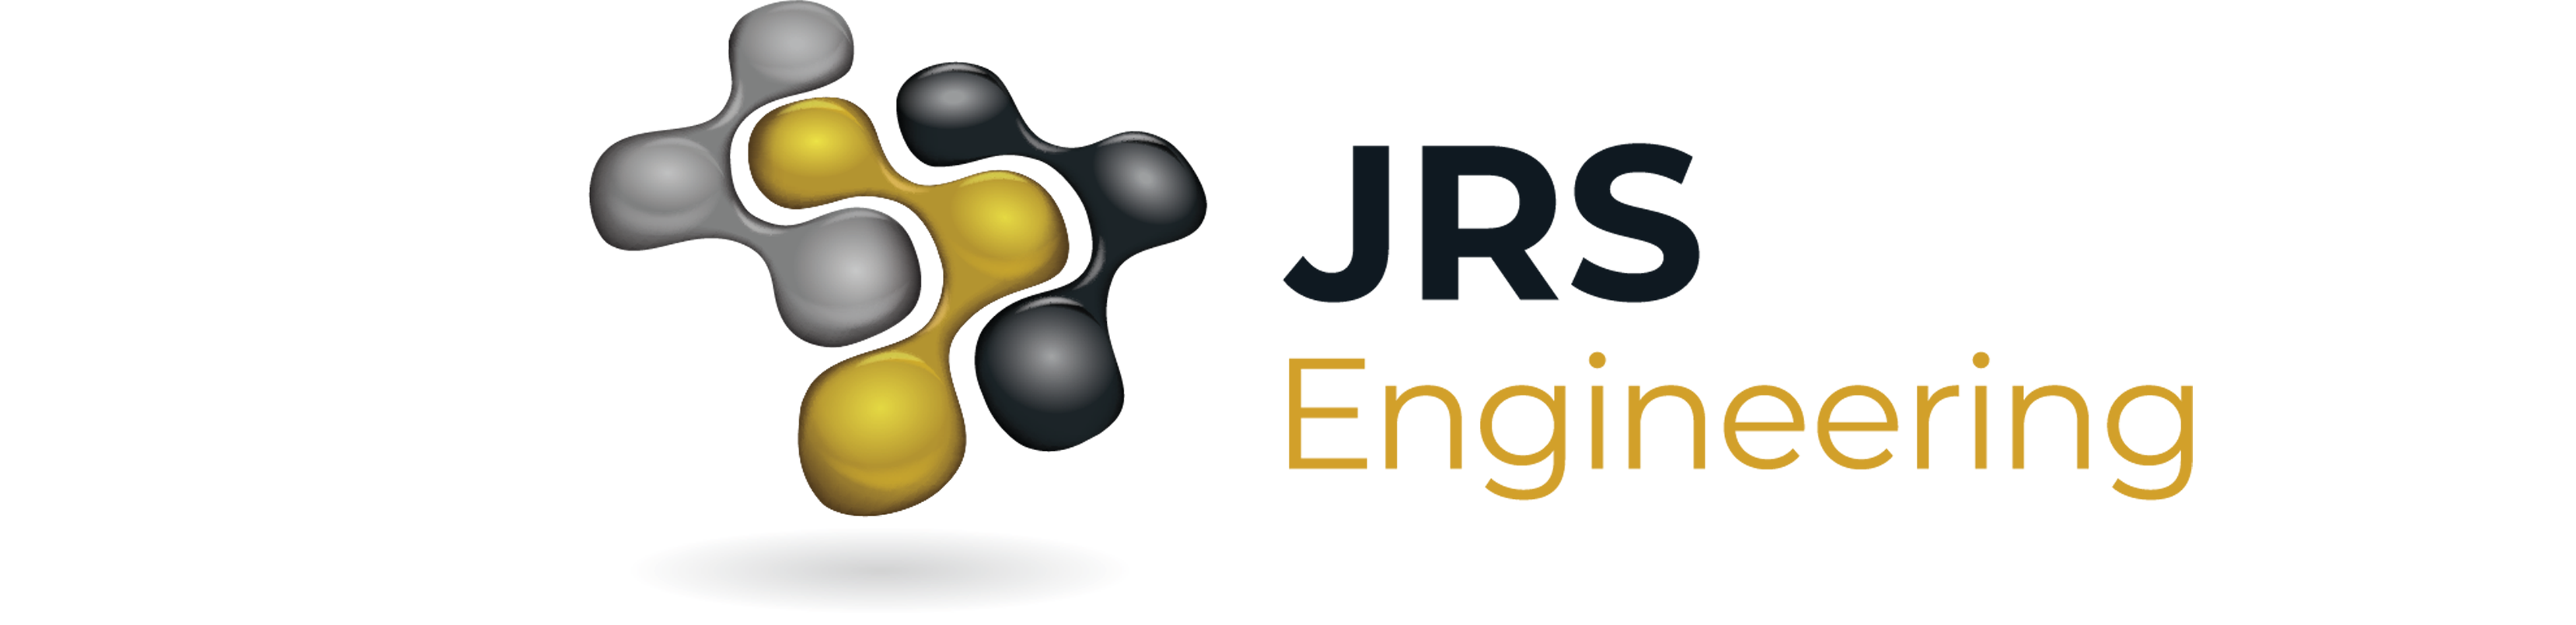 jrs sponsor ribbon